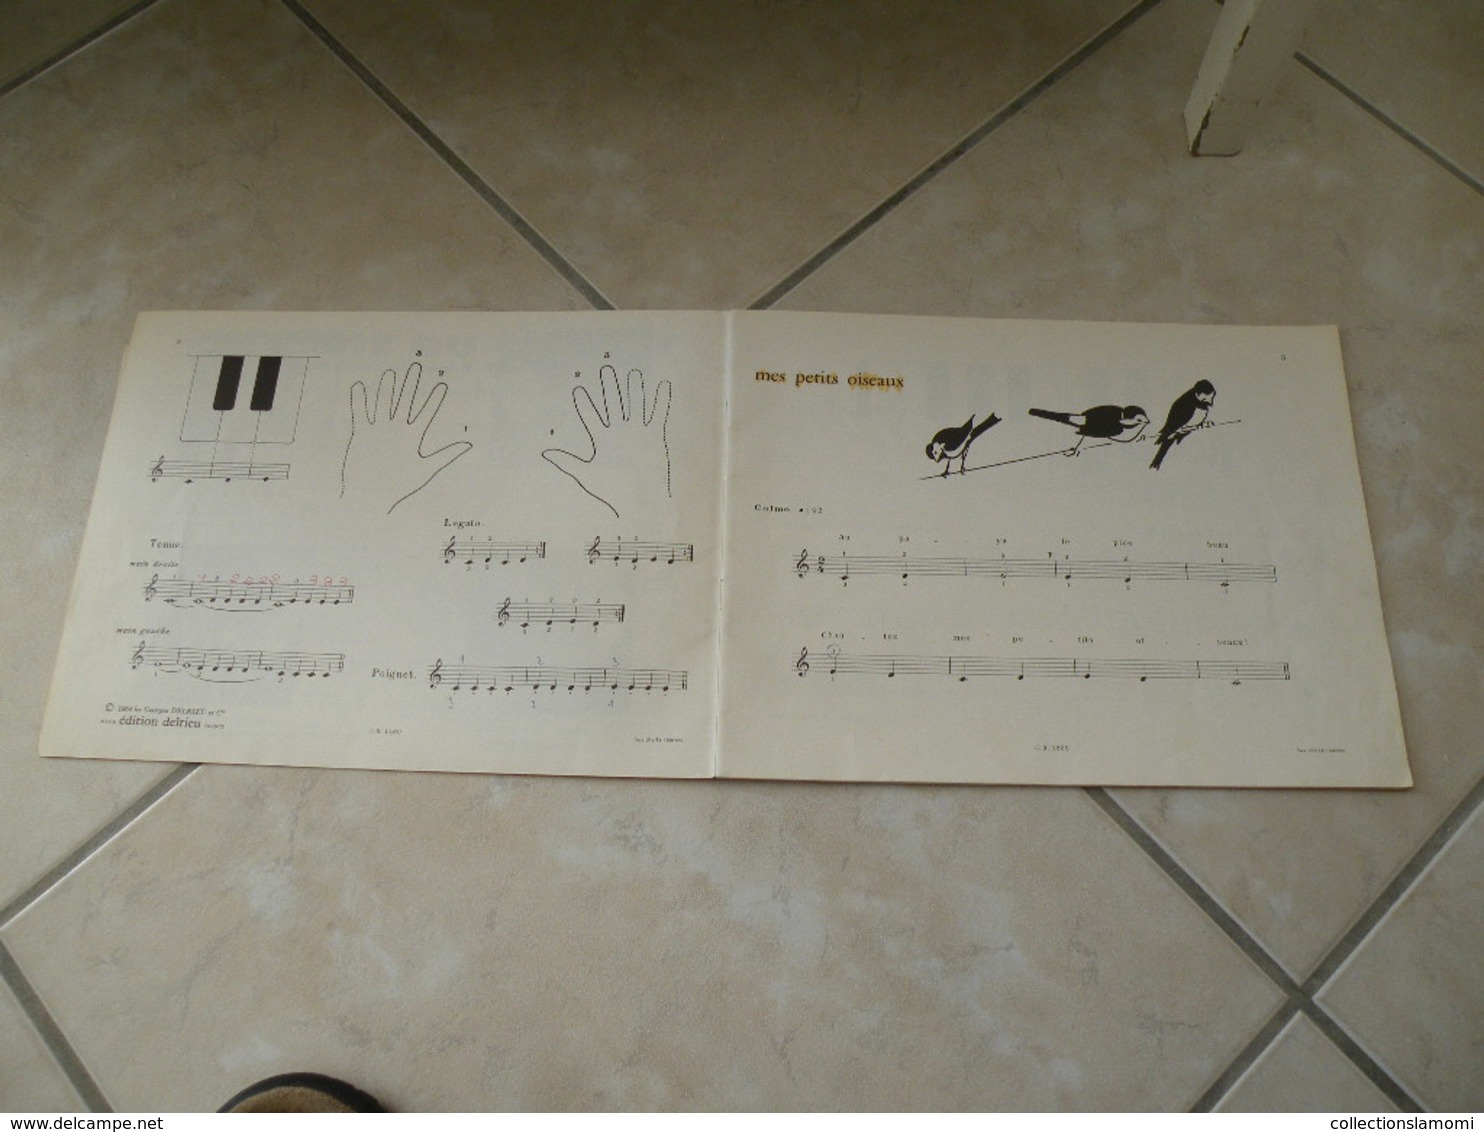 L'Enfant Au Clavier, Méthode De Piano Illustrée - Musique (1) - Unterrichtswerke